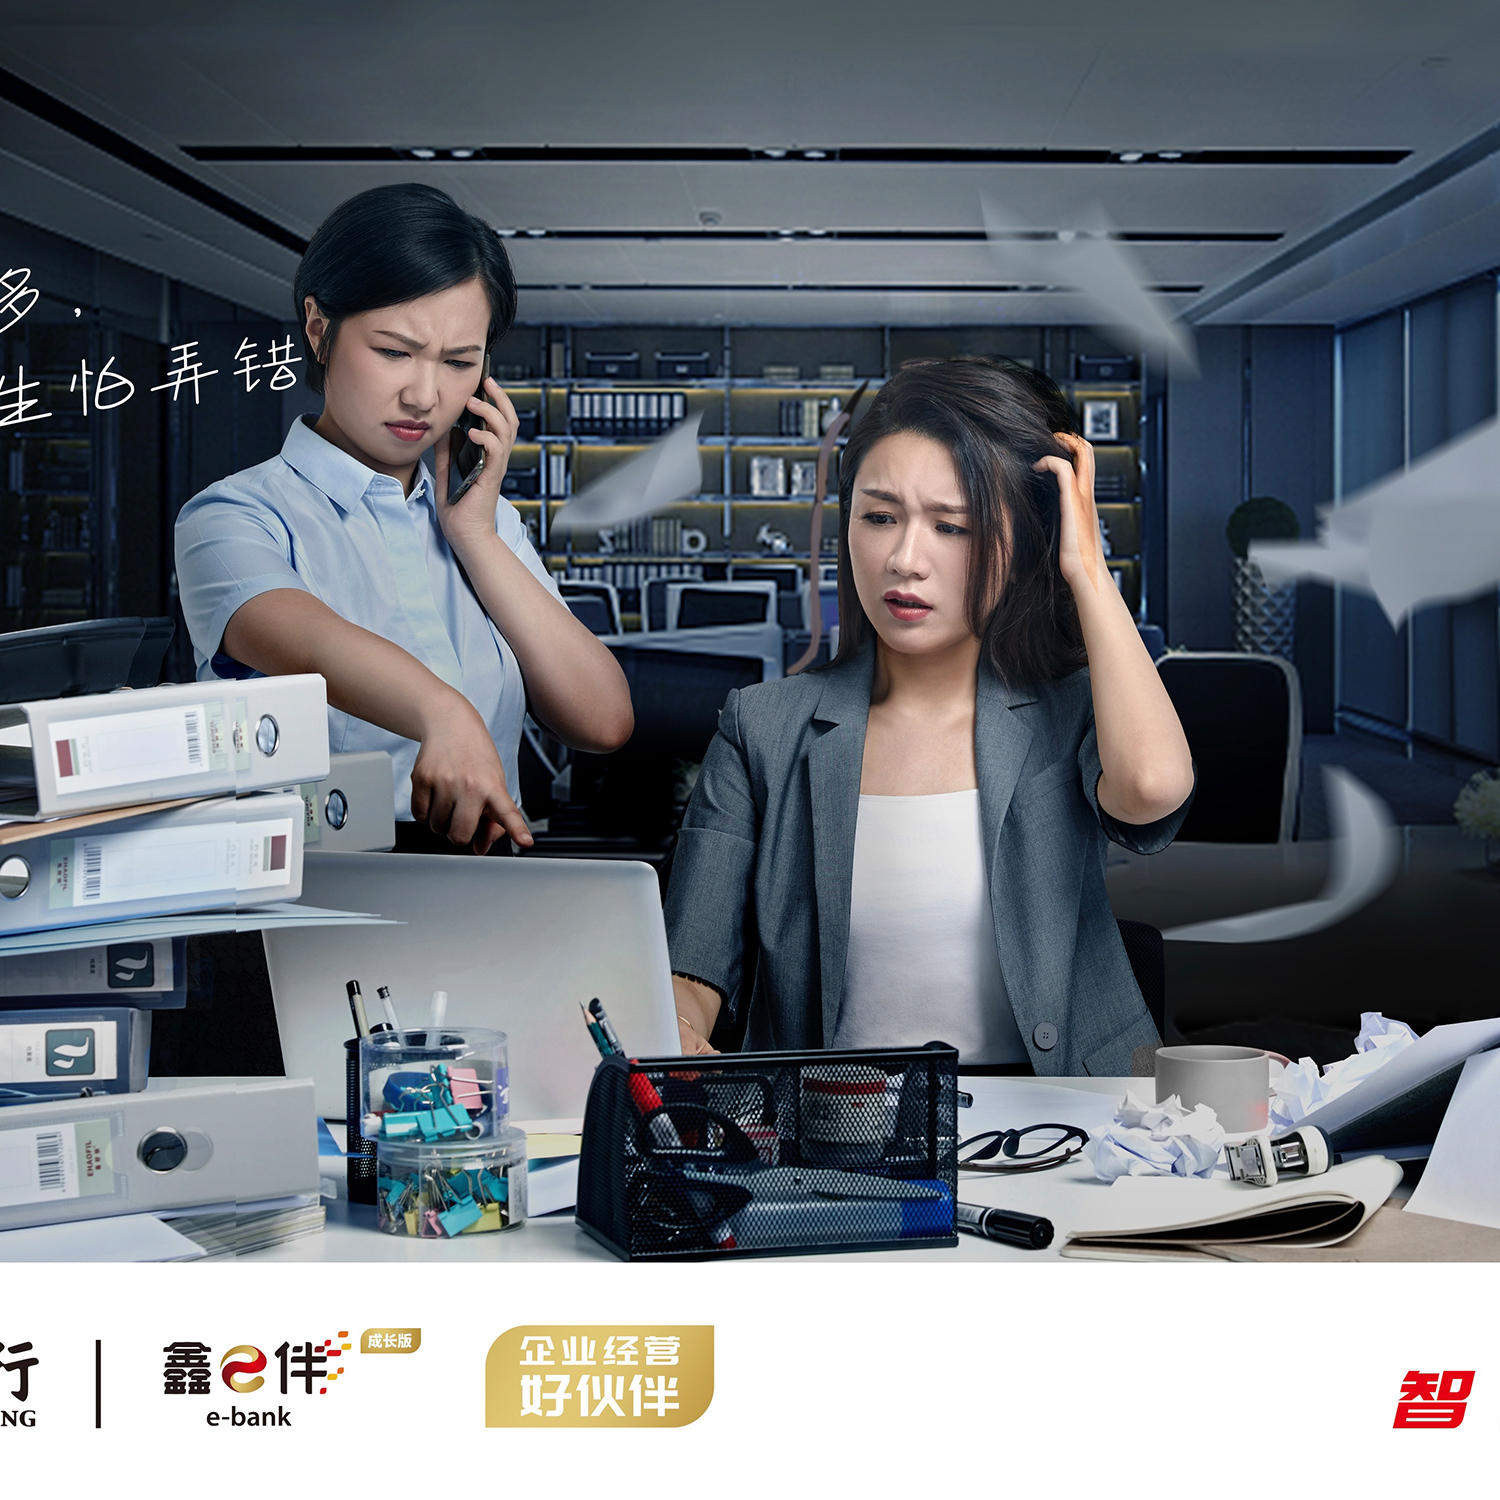 南京银行平面广告宣传海报设计稿-江苏南京专业平面广告摄影公司